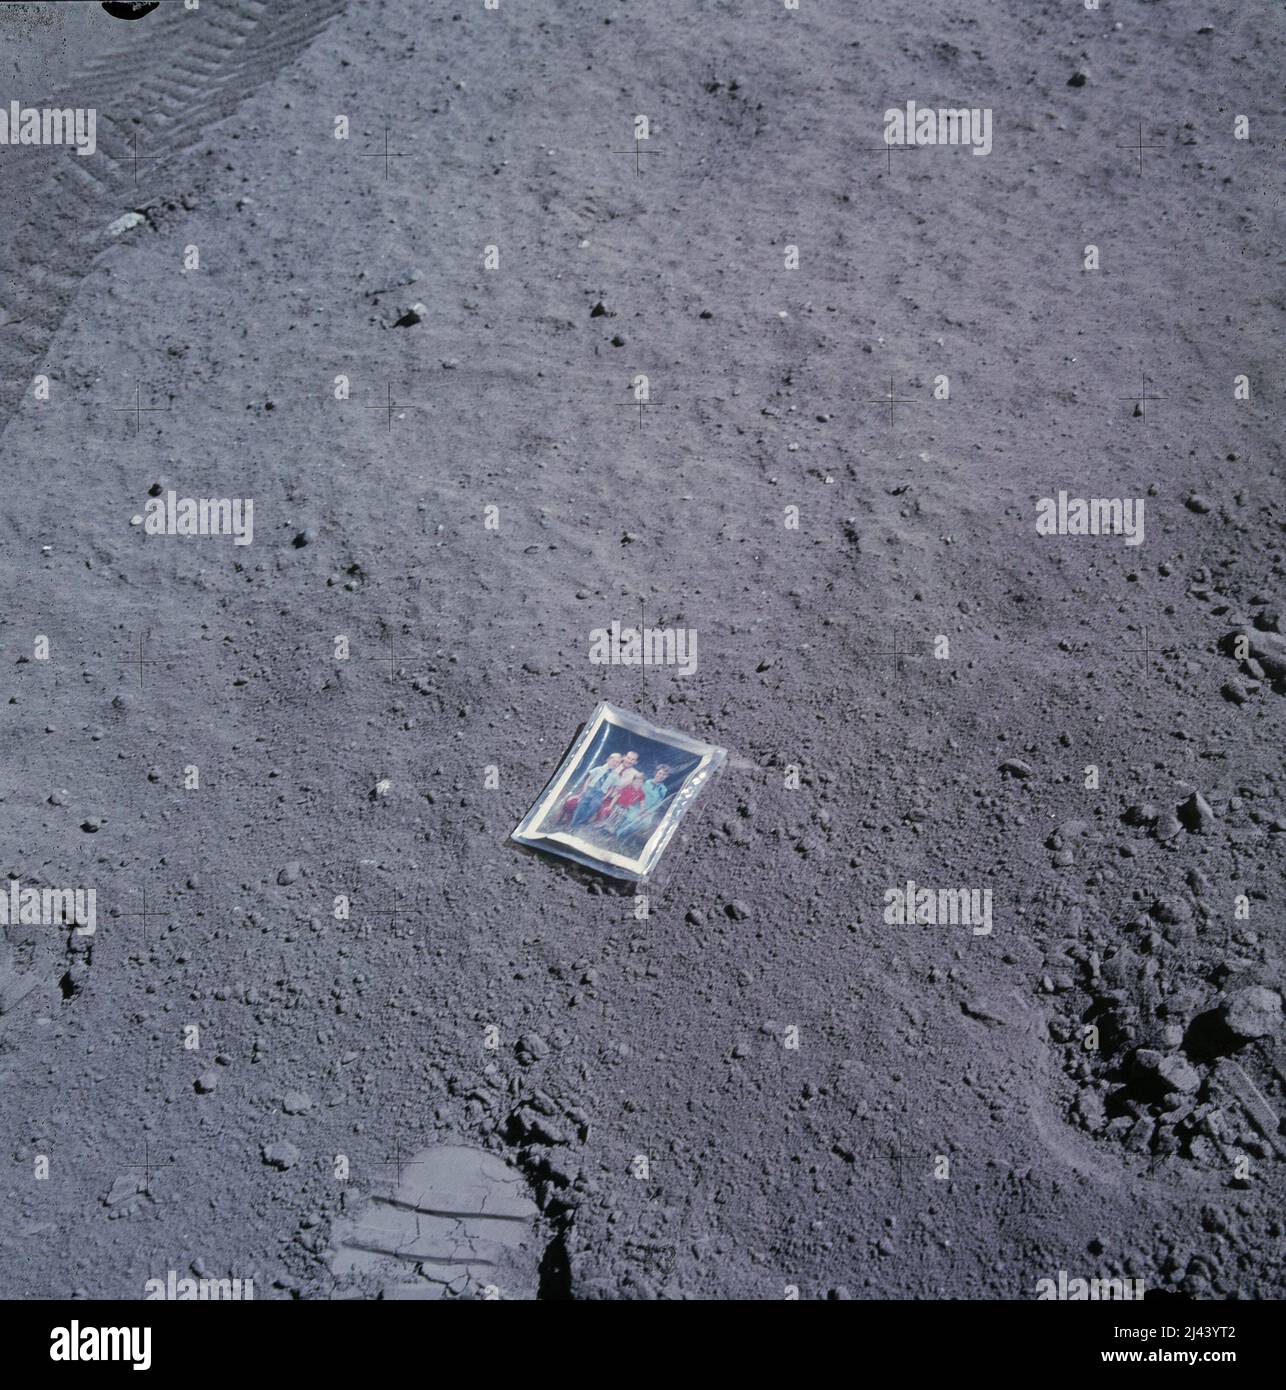 Das Familienportrait von Astronaut Charlie Duke wurde während der Apollo 16-Mission auf der Oberfläche des Mondes hinterlassen. Stockfoto